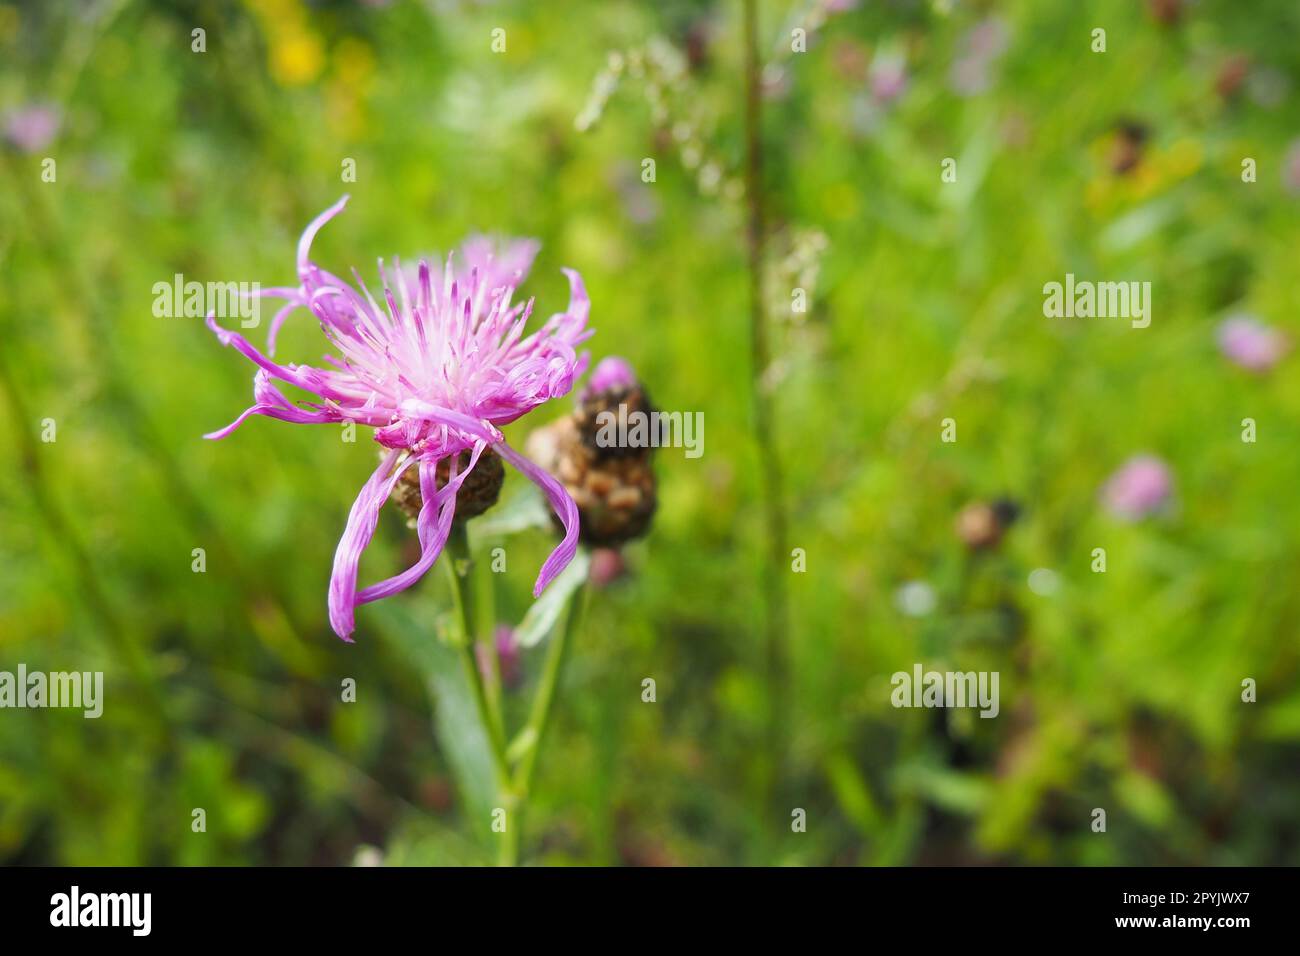 Le cornflower des prairies Centaurea jacea est une plante herbacée, une espèce du genre Cornflower de la famille des Asteraceae, ou Compositae. Pousse dans les prés et les bords de la forêt. Fleur violette élégante. Carélie Banque D'Images